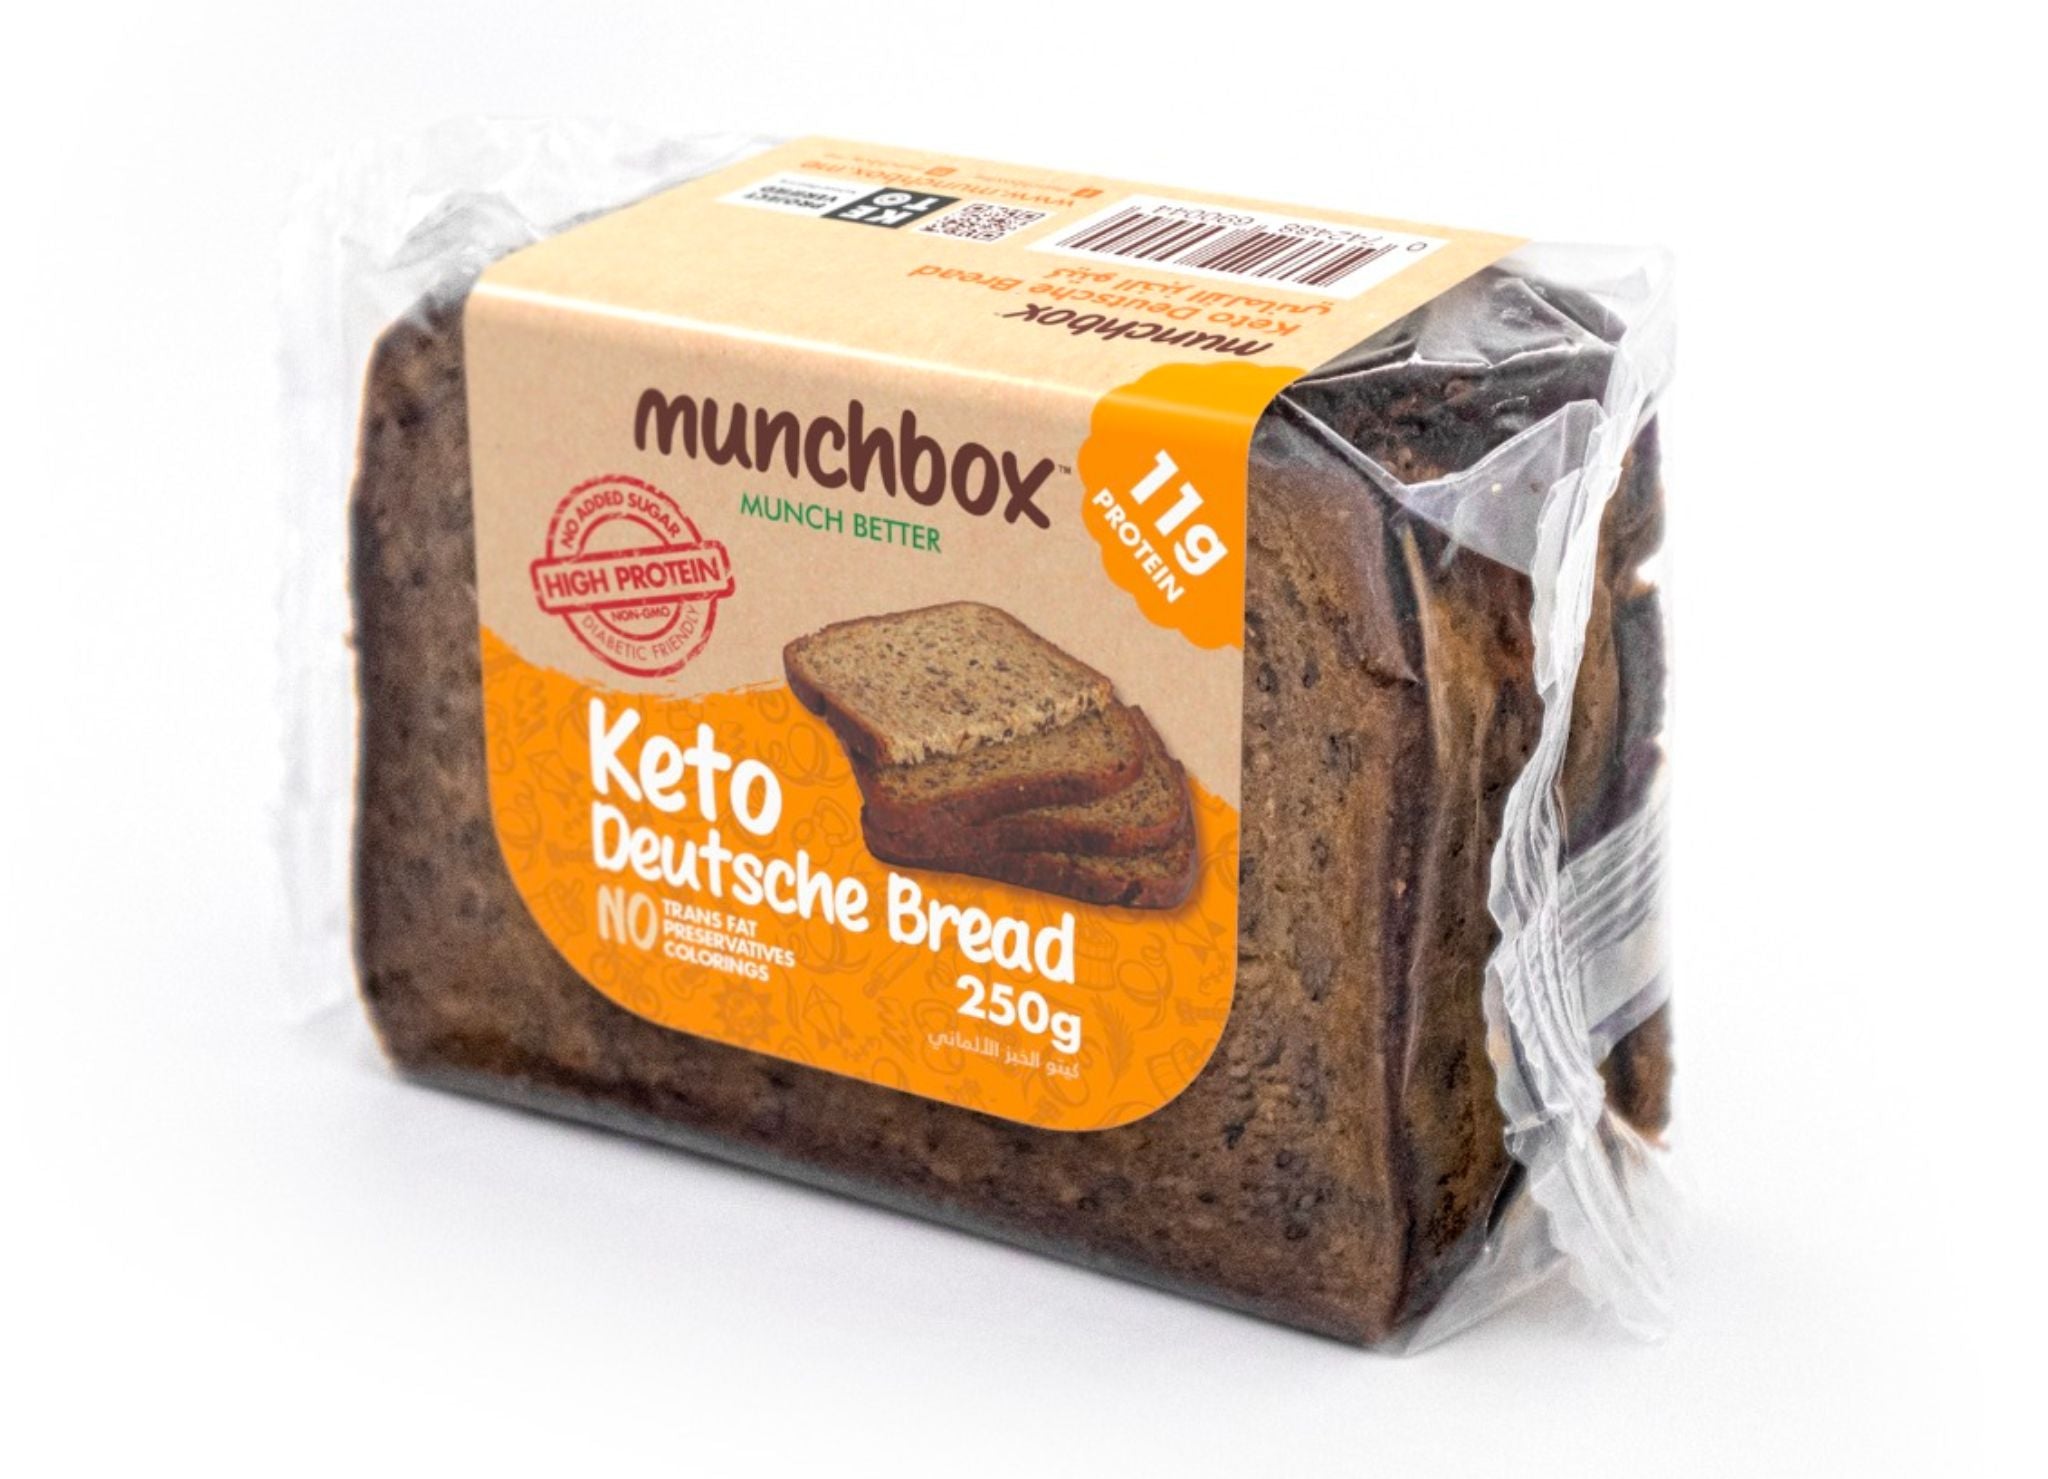 MUNCHBOX Keto Deutsche Bread, 250g, Keto, Sugar free